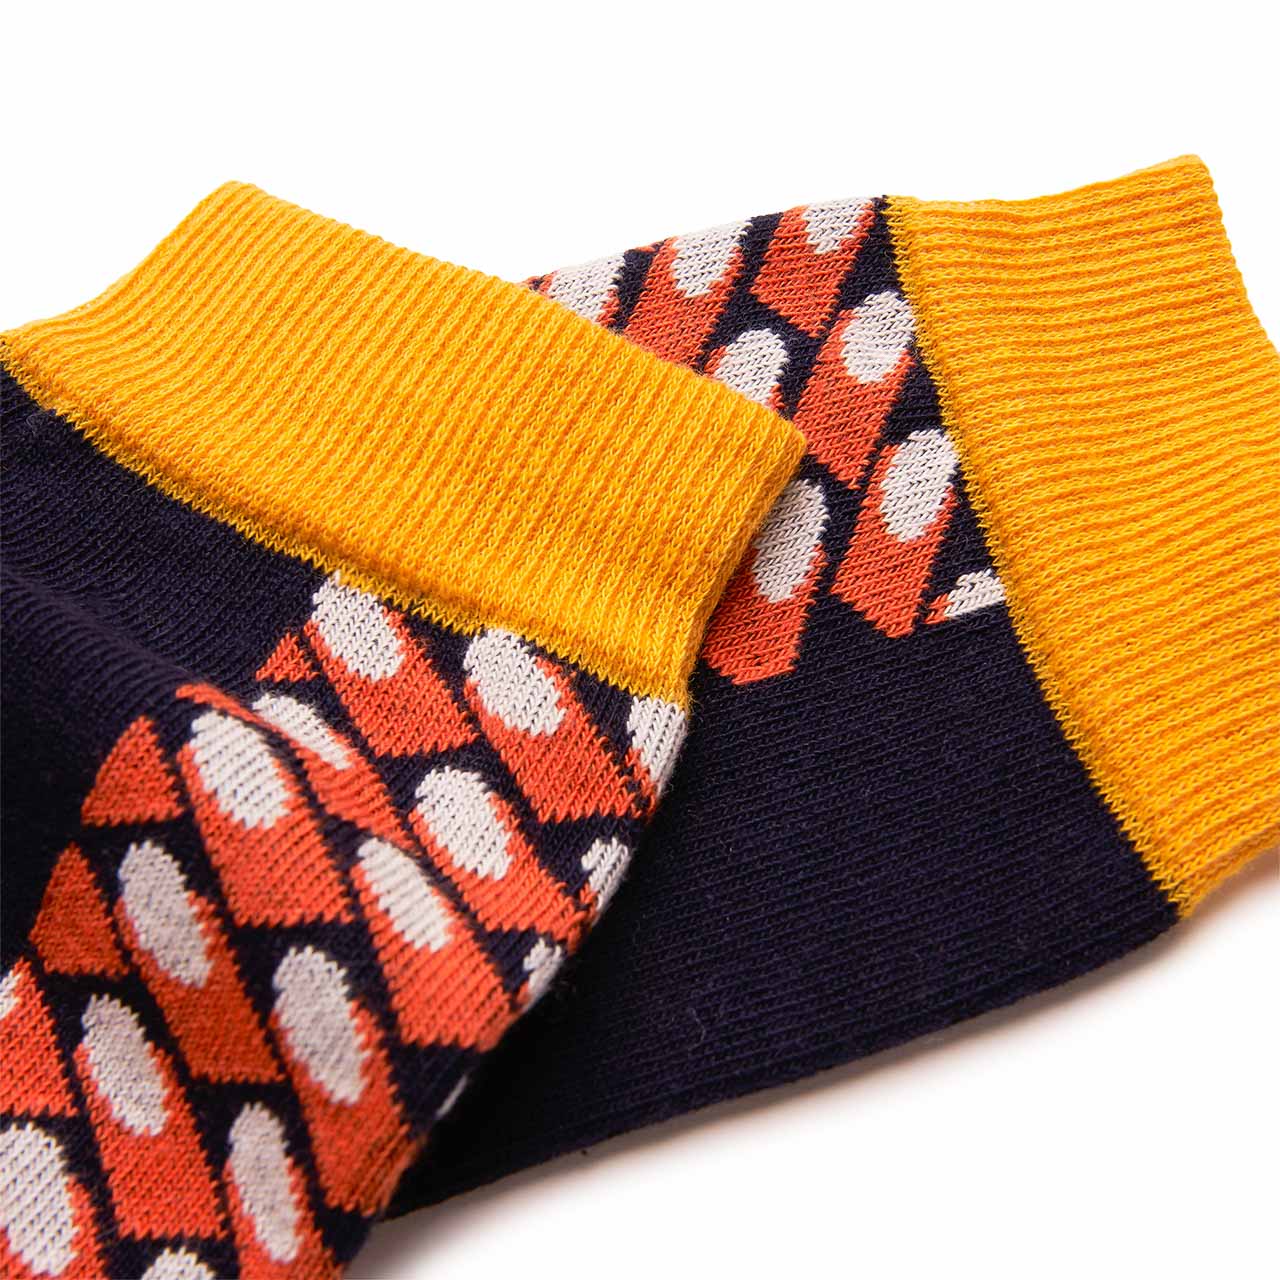 henrik vibskov bounceback socks (black / orange) - ss19-s905 - a.plus - Image - 2